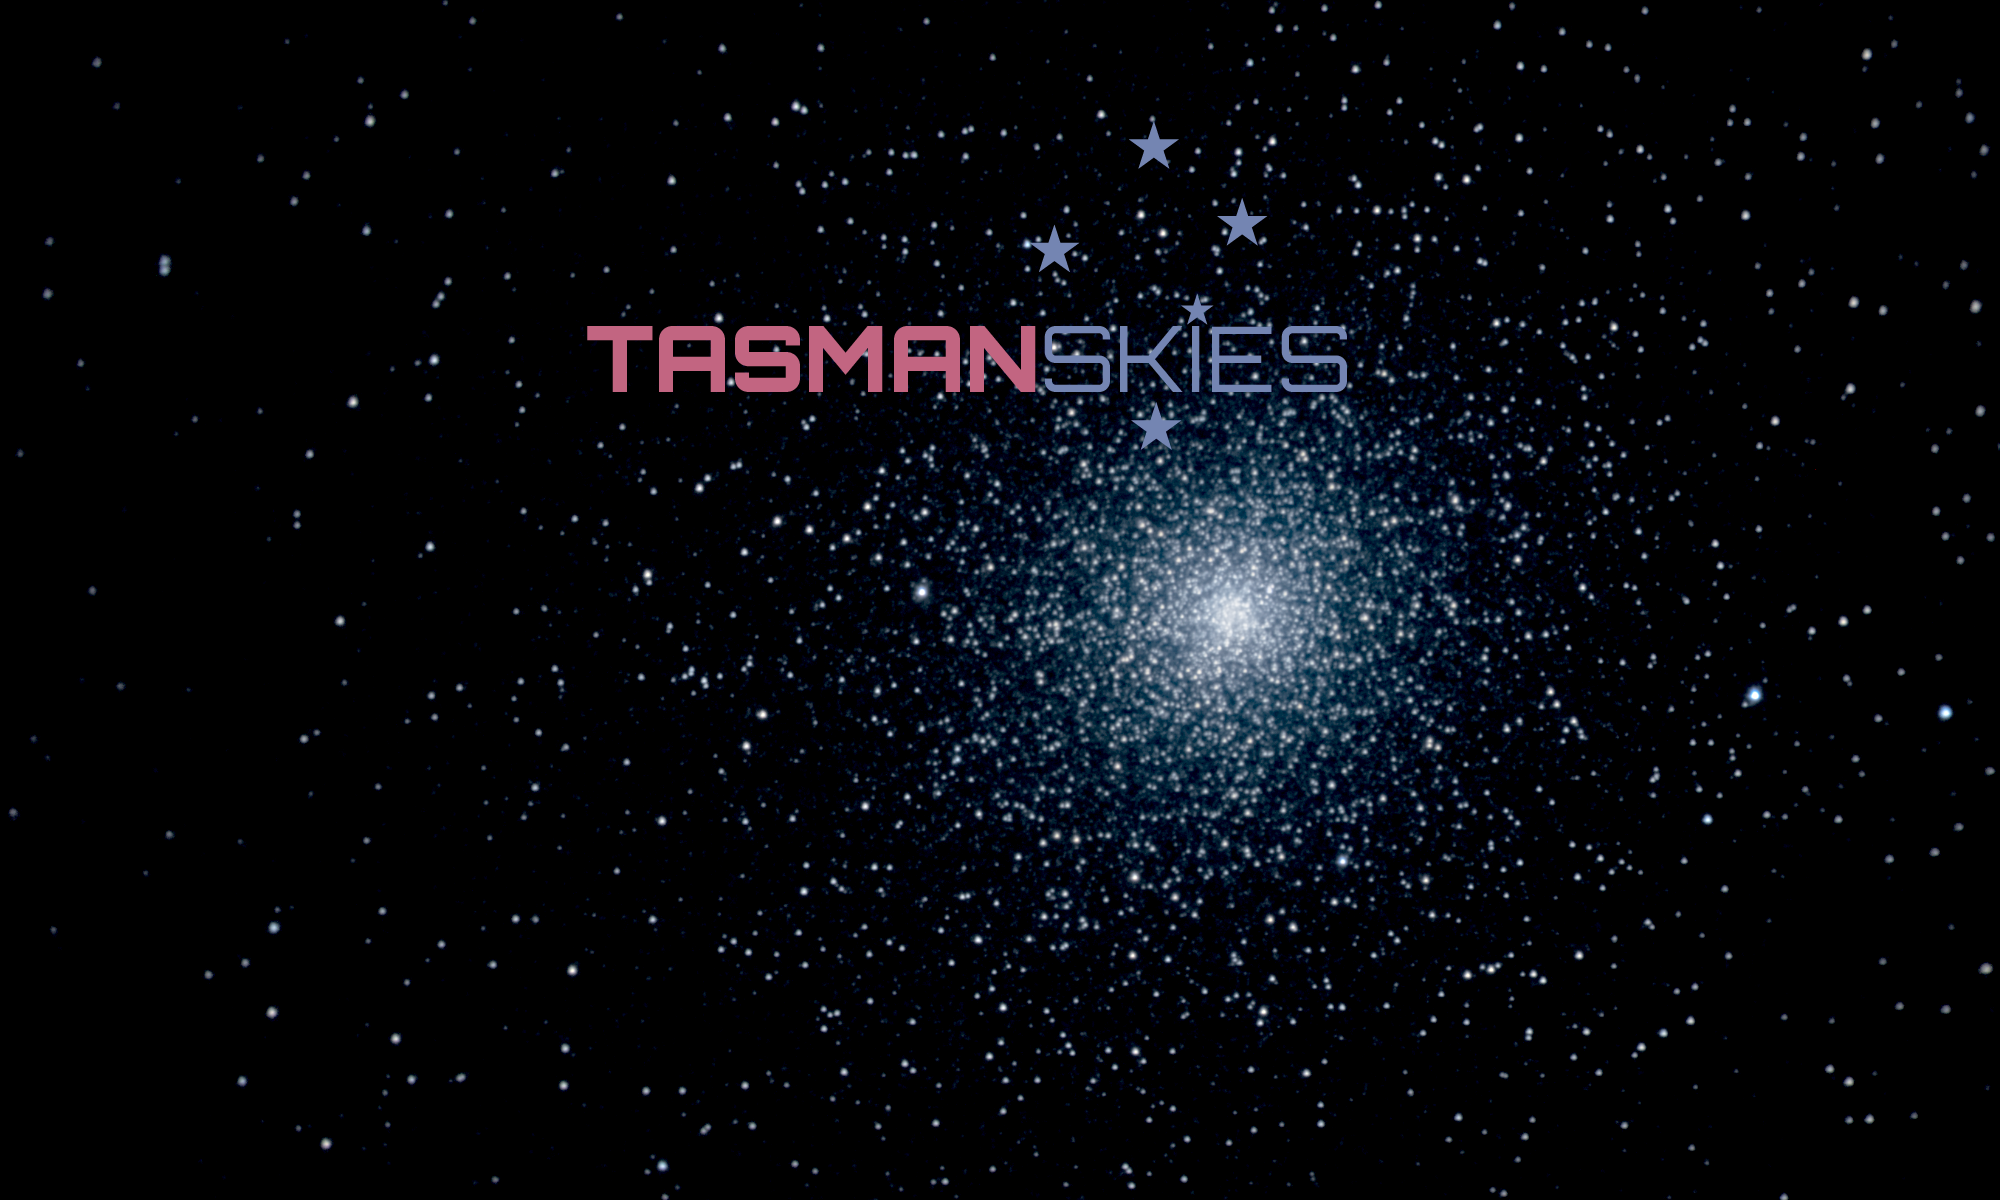 Tasman Skies banner over 47 Tucanae